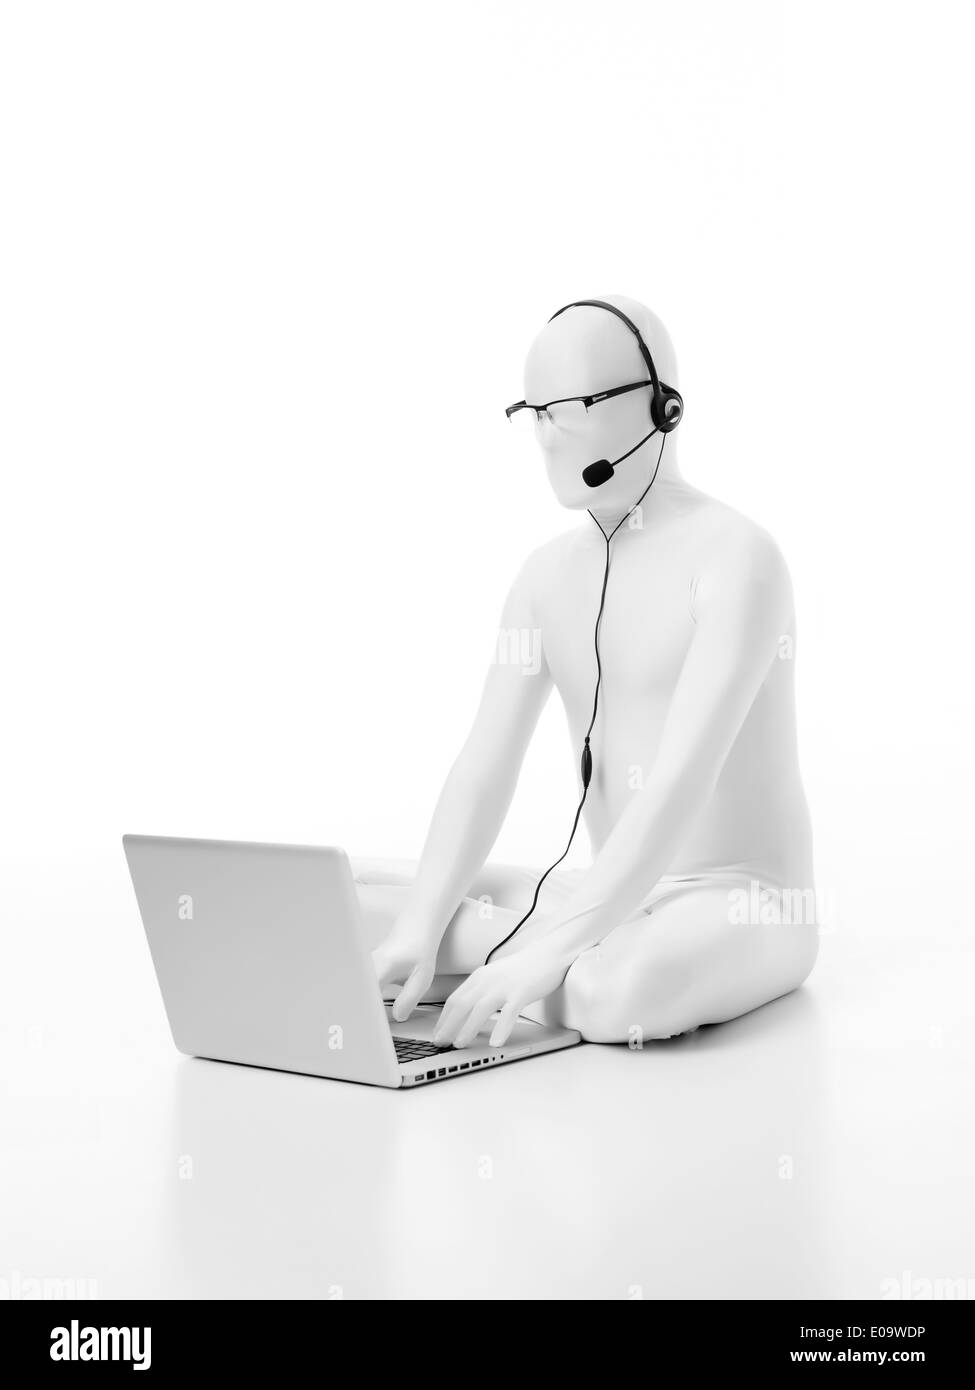 der Mann ohne Gesicht in weiß mit einem Laptop Kopfhörer Mikrofon Kopf und Auge Brille arbeiten auf dem Boden sitzend gekleidet Stockfoto